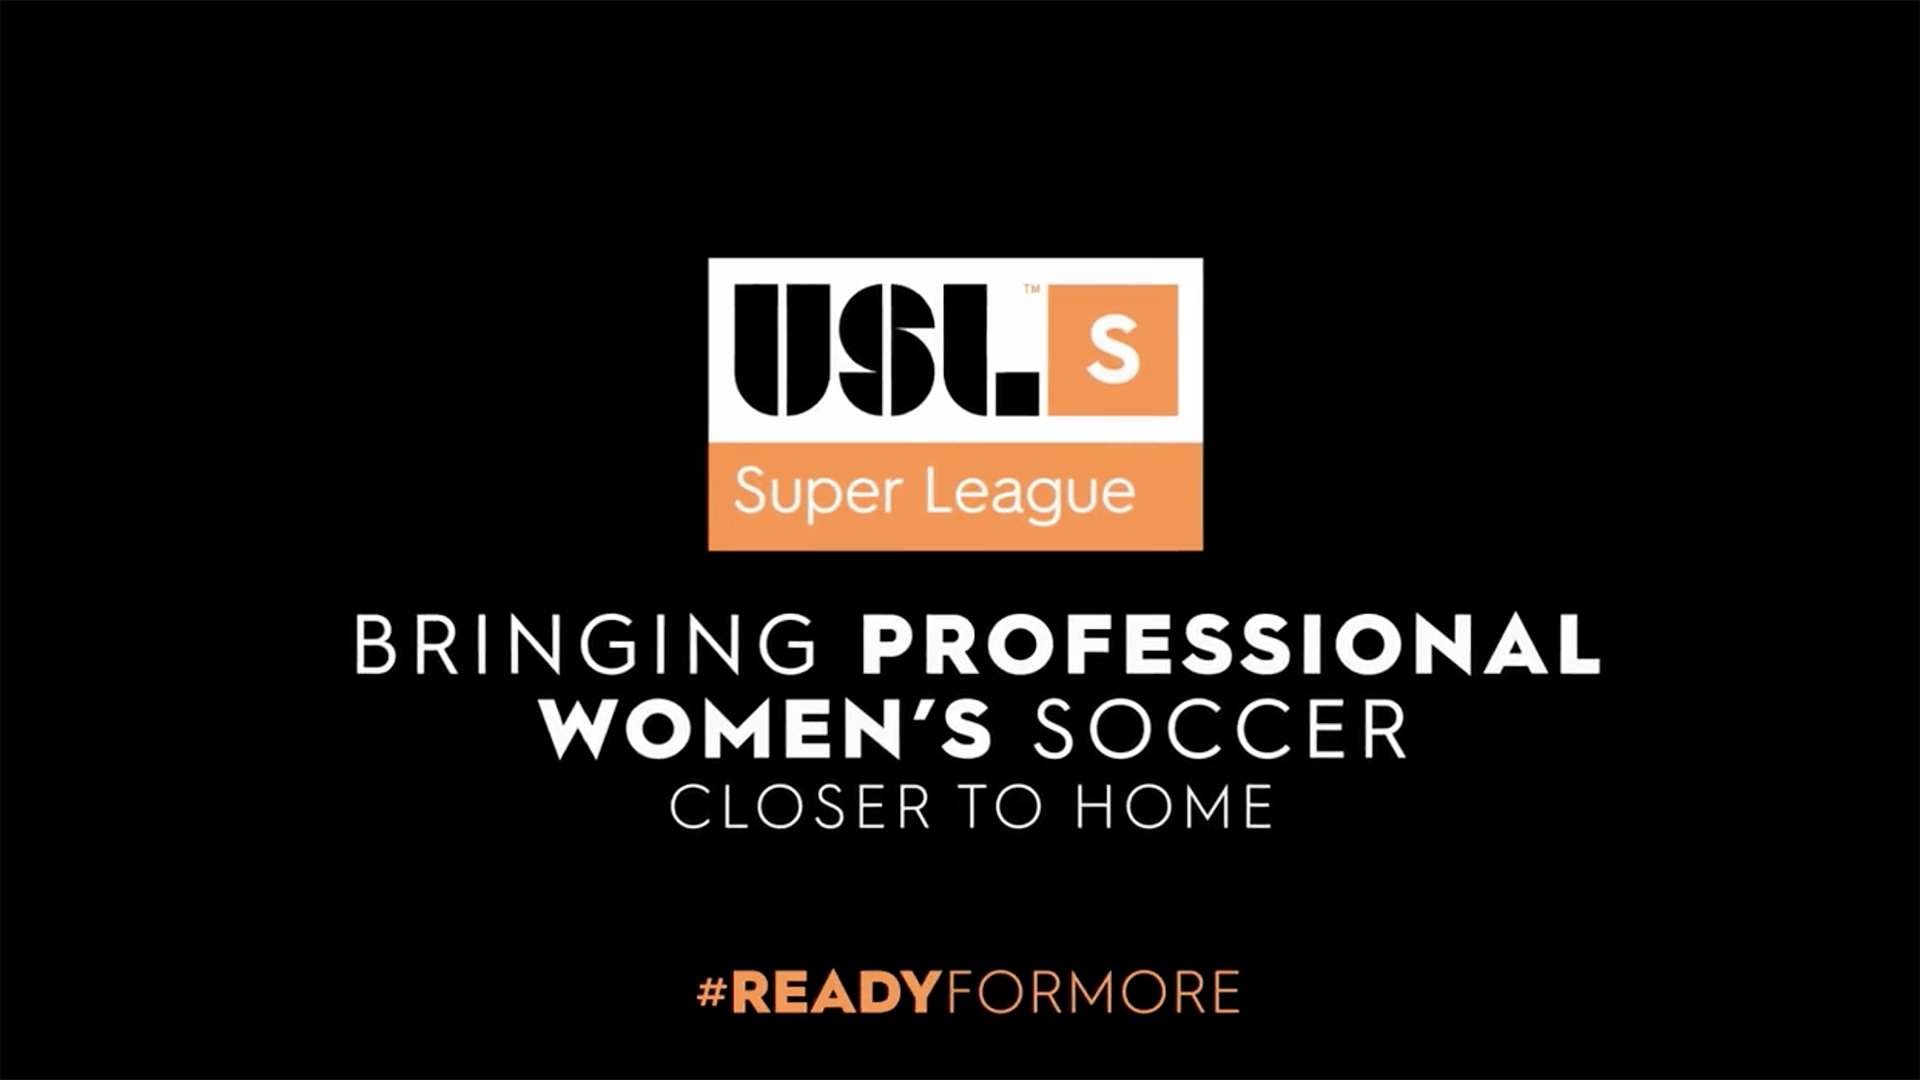 USL Super League promo